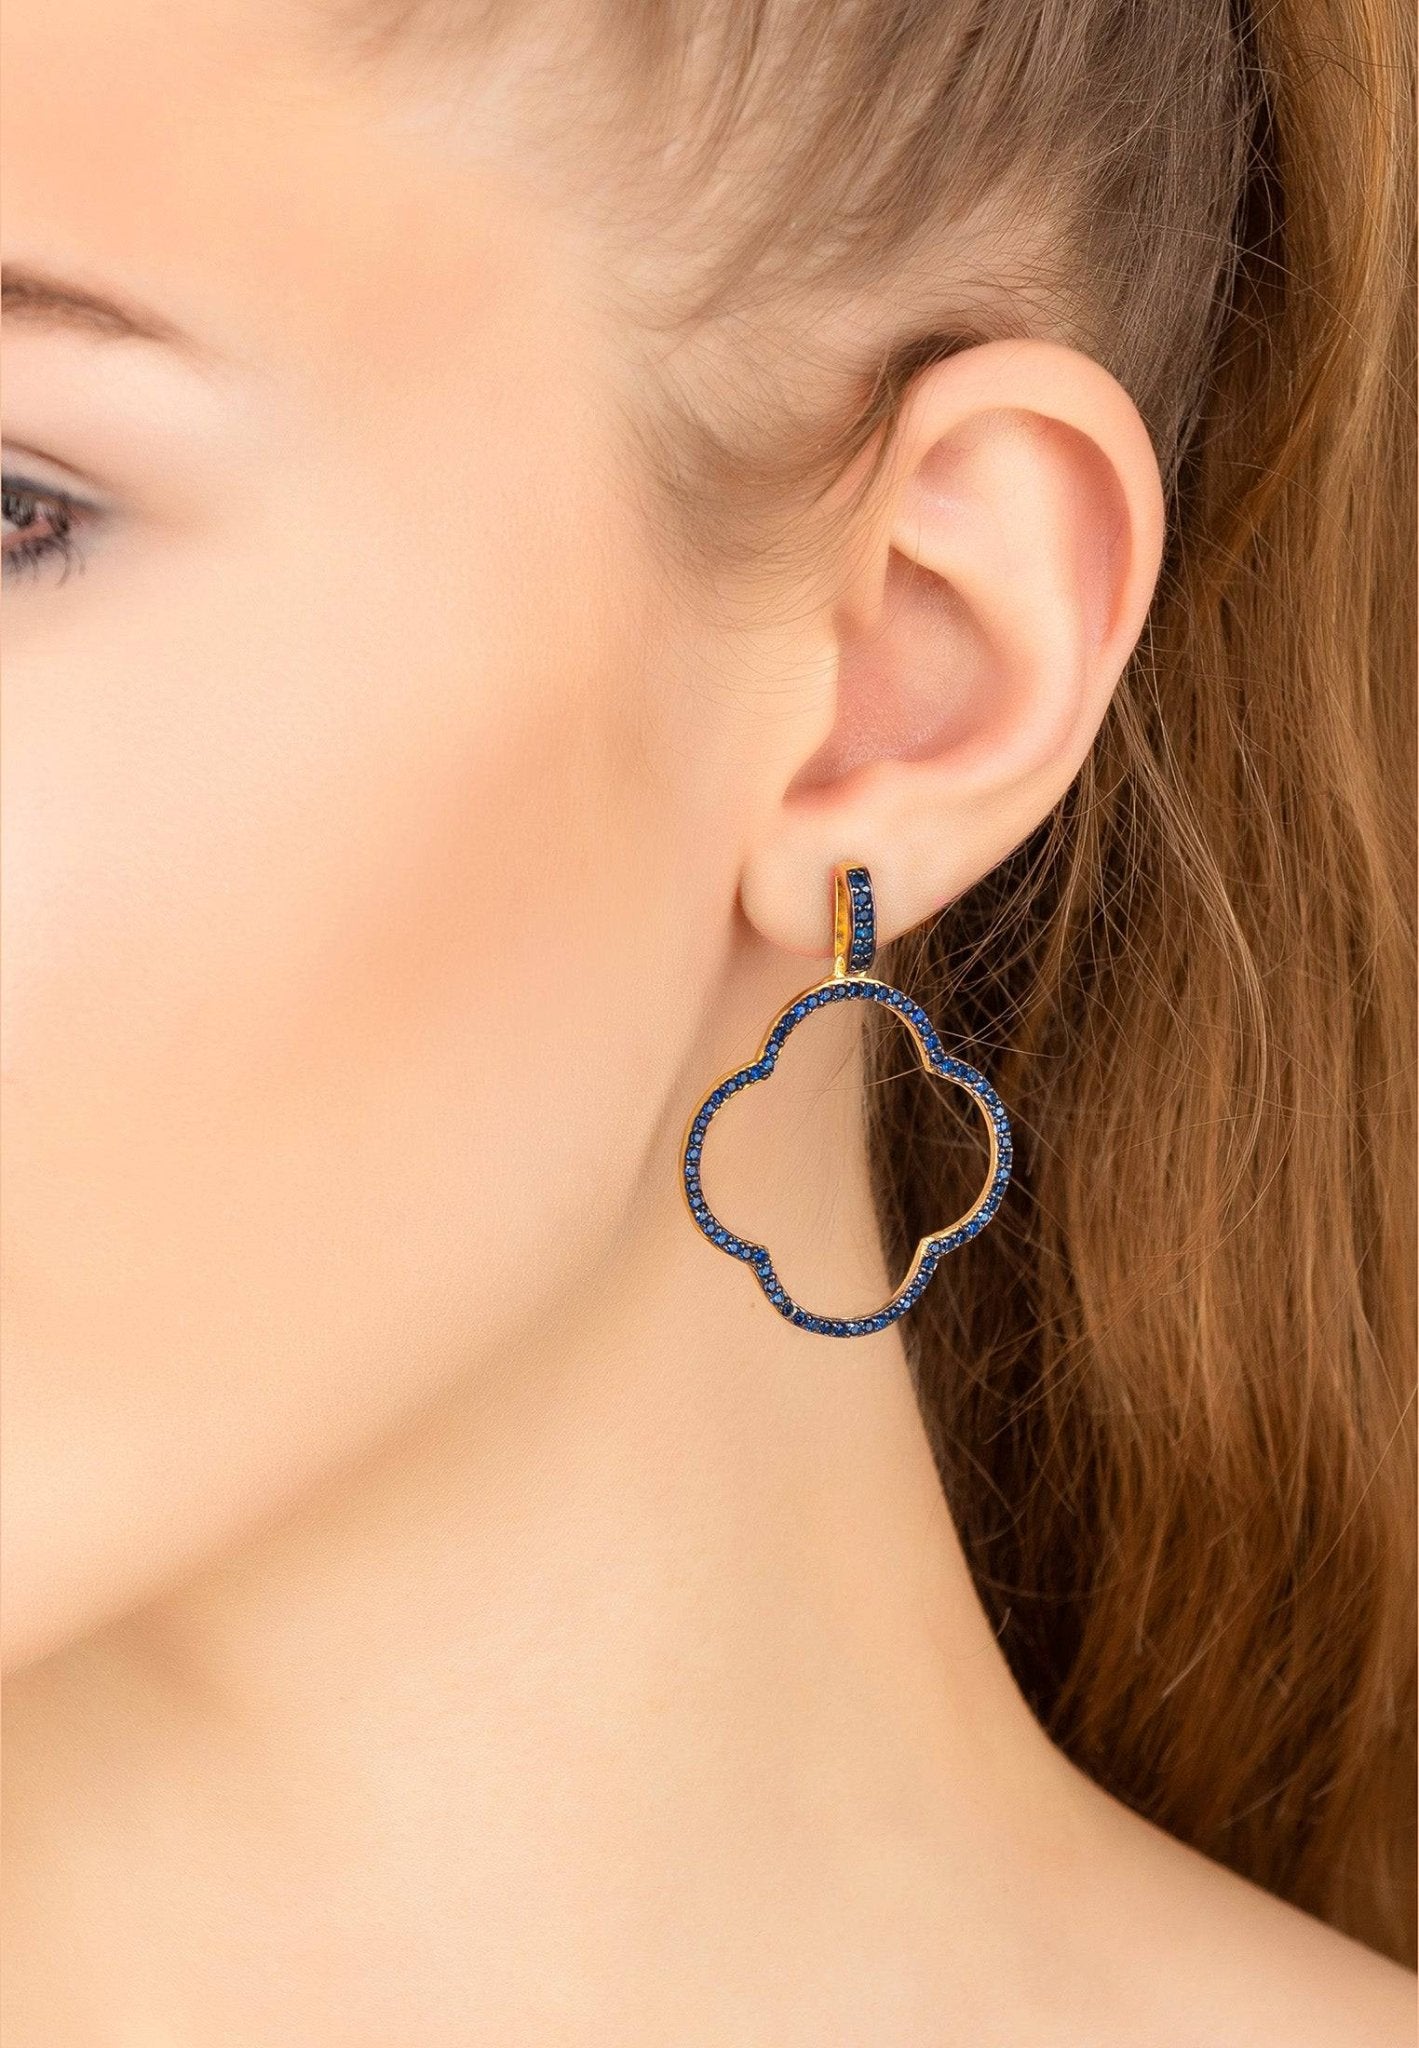 Open Clover Large Drop Earrings Gold Sapphire Blue Cz - LATELITA Earrings